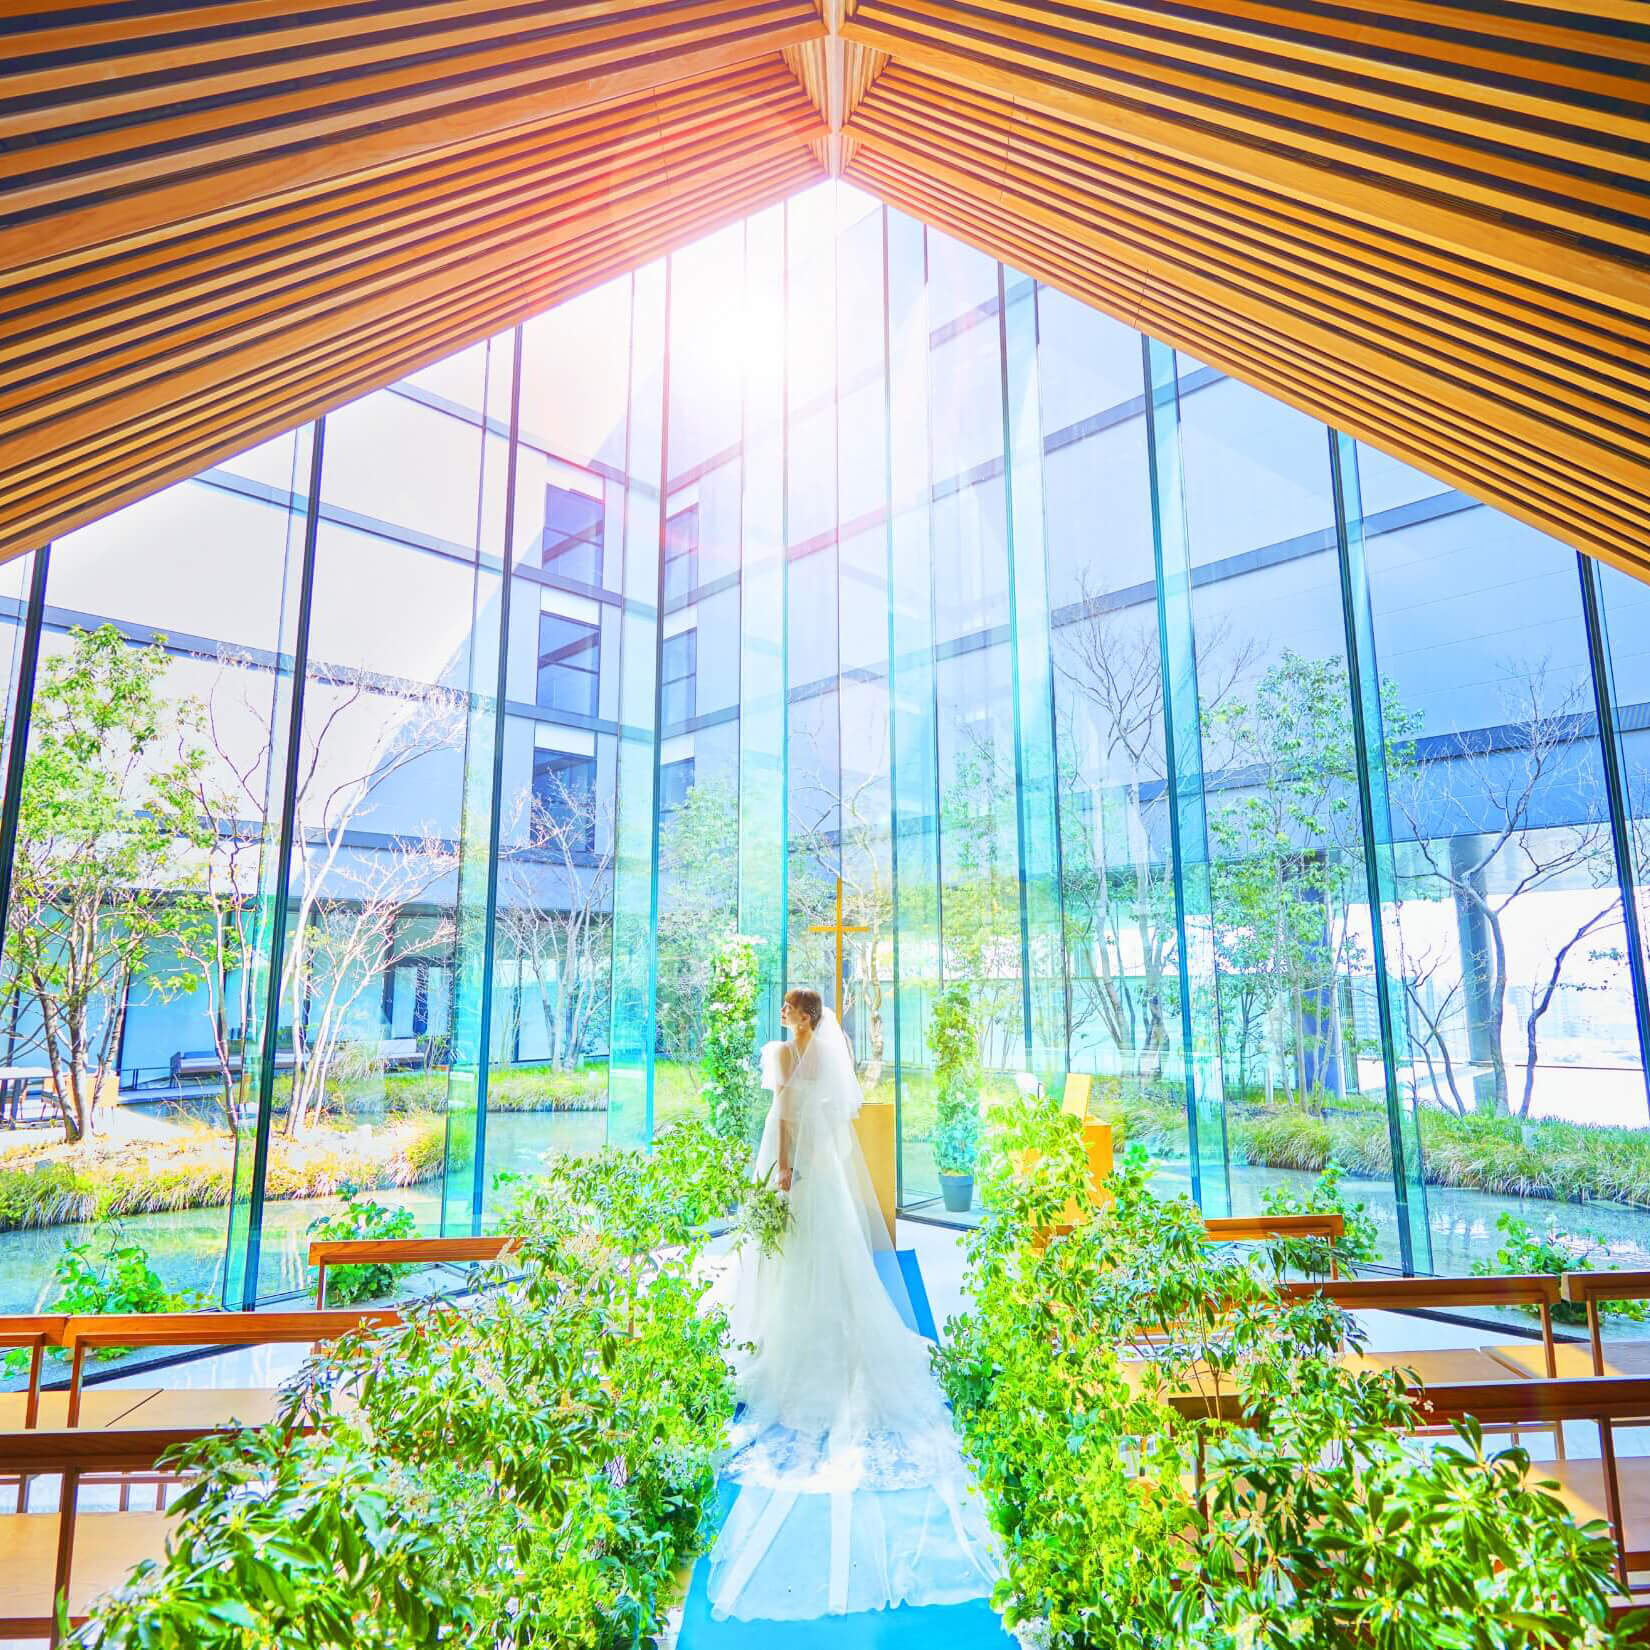 熊本で一番新しい結婚式場 ザ・フォレストテラス熊本